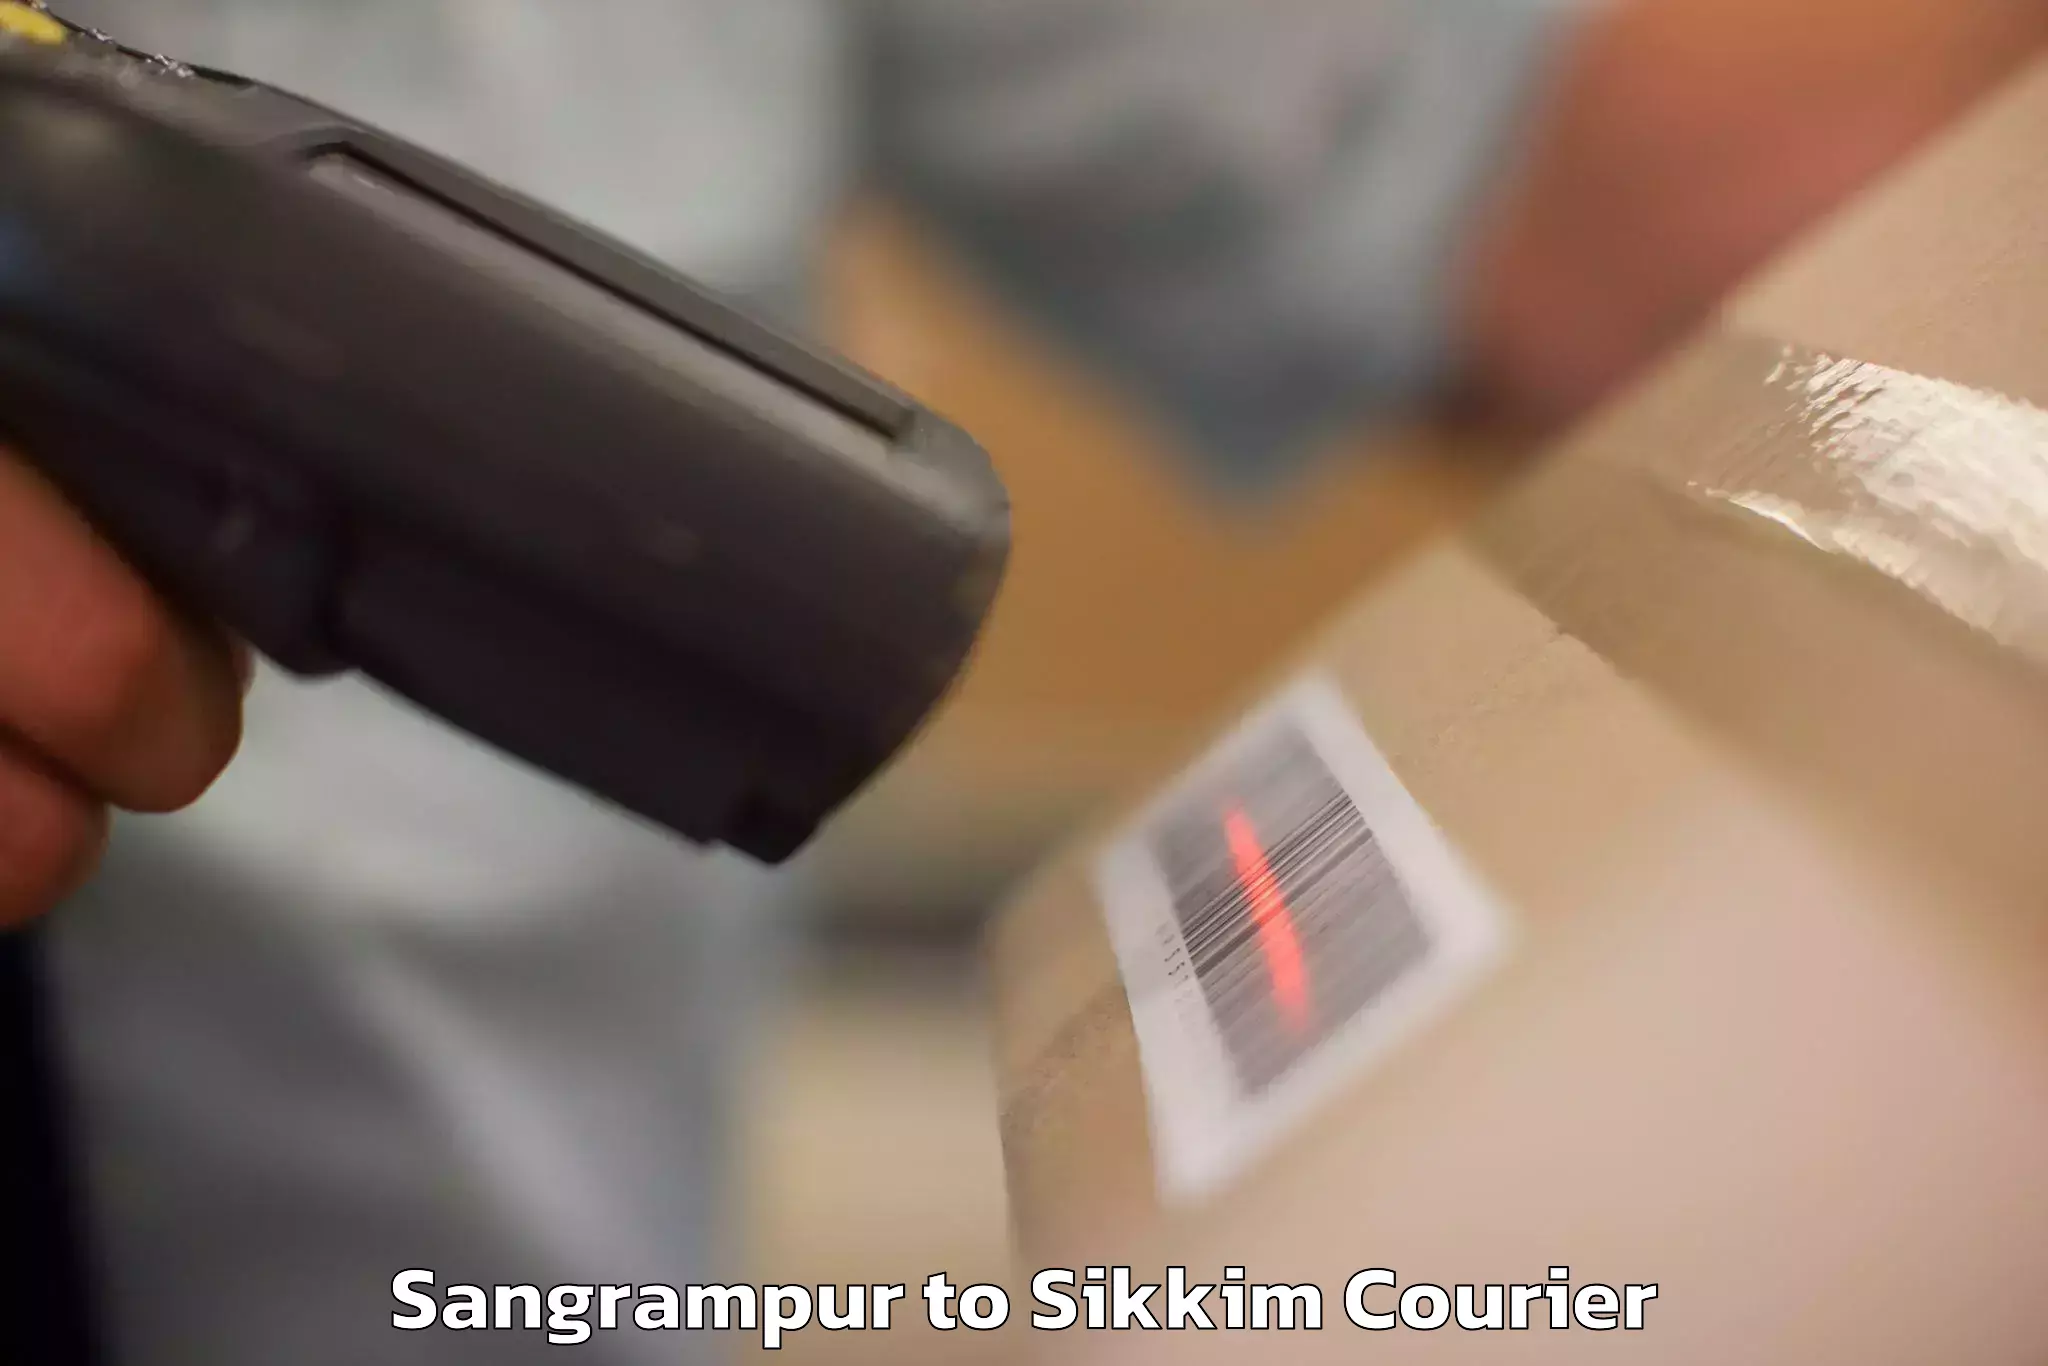 Baggage transport services Sangrampur to Sikkim